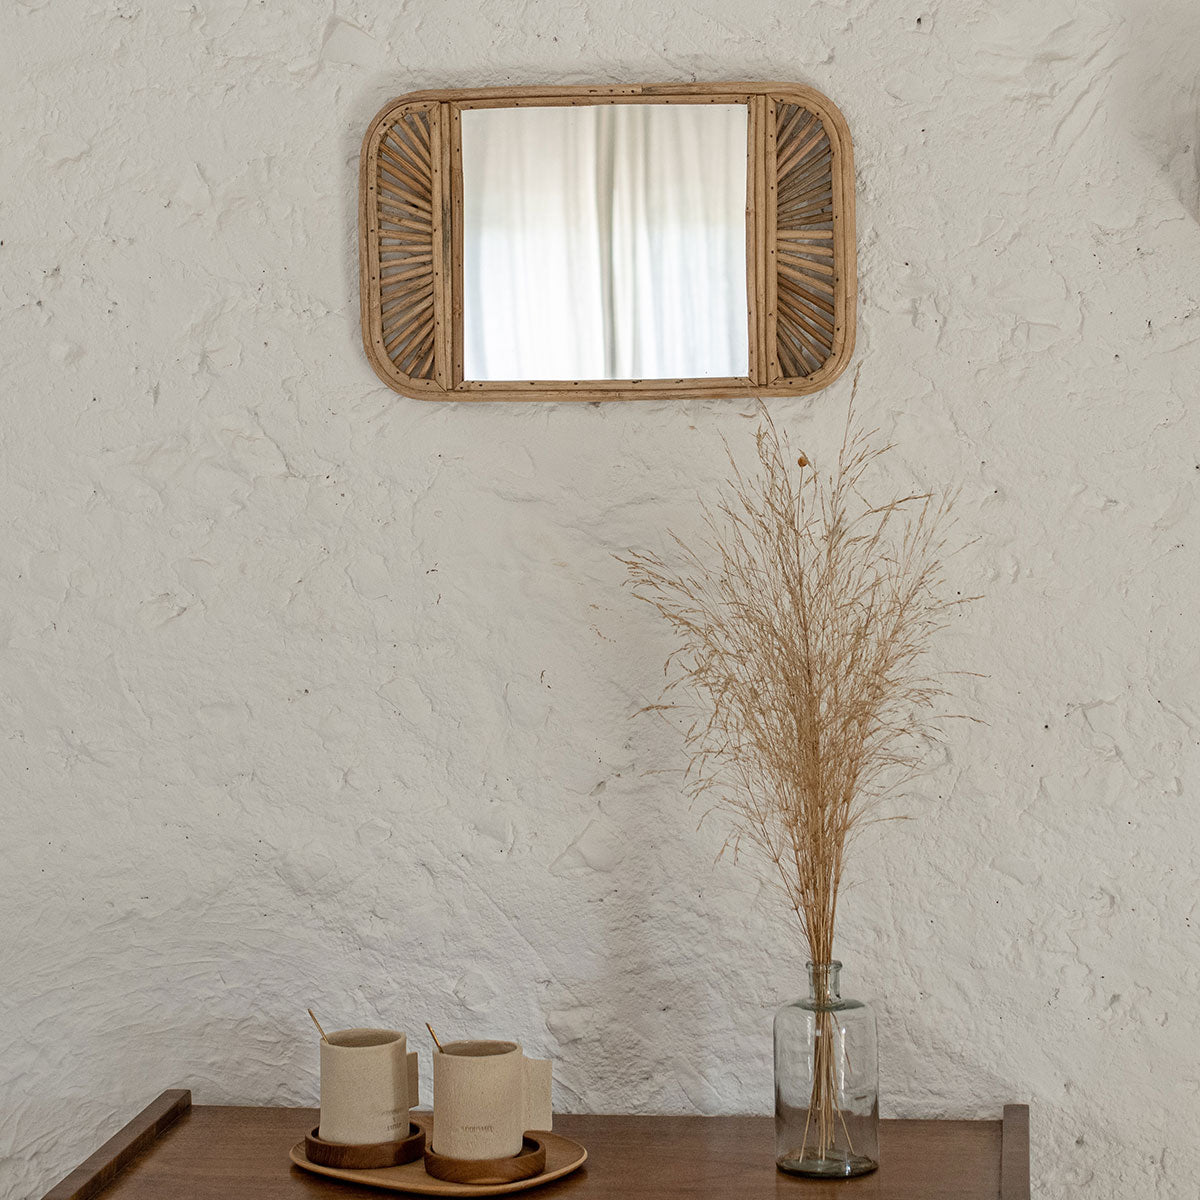 Espejo para colgar en pared, con marco decorado realizado en ratán.